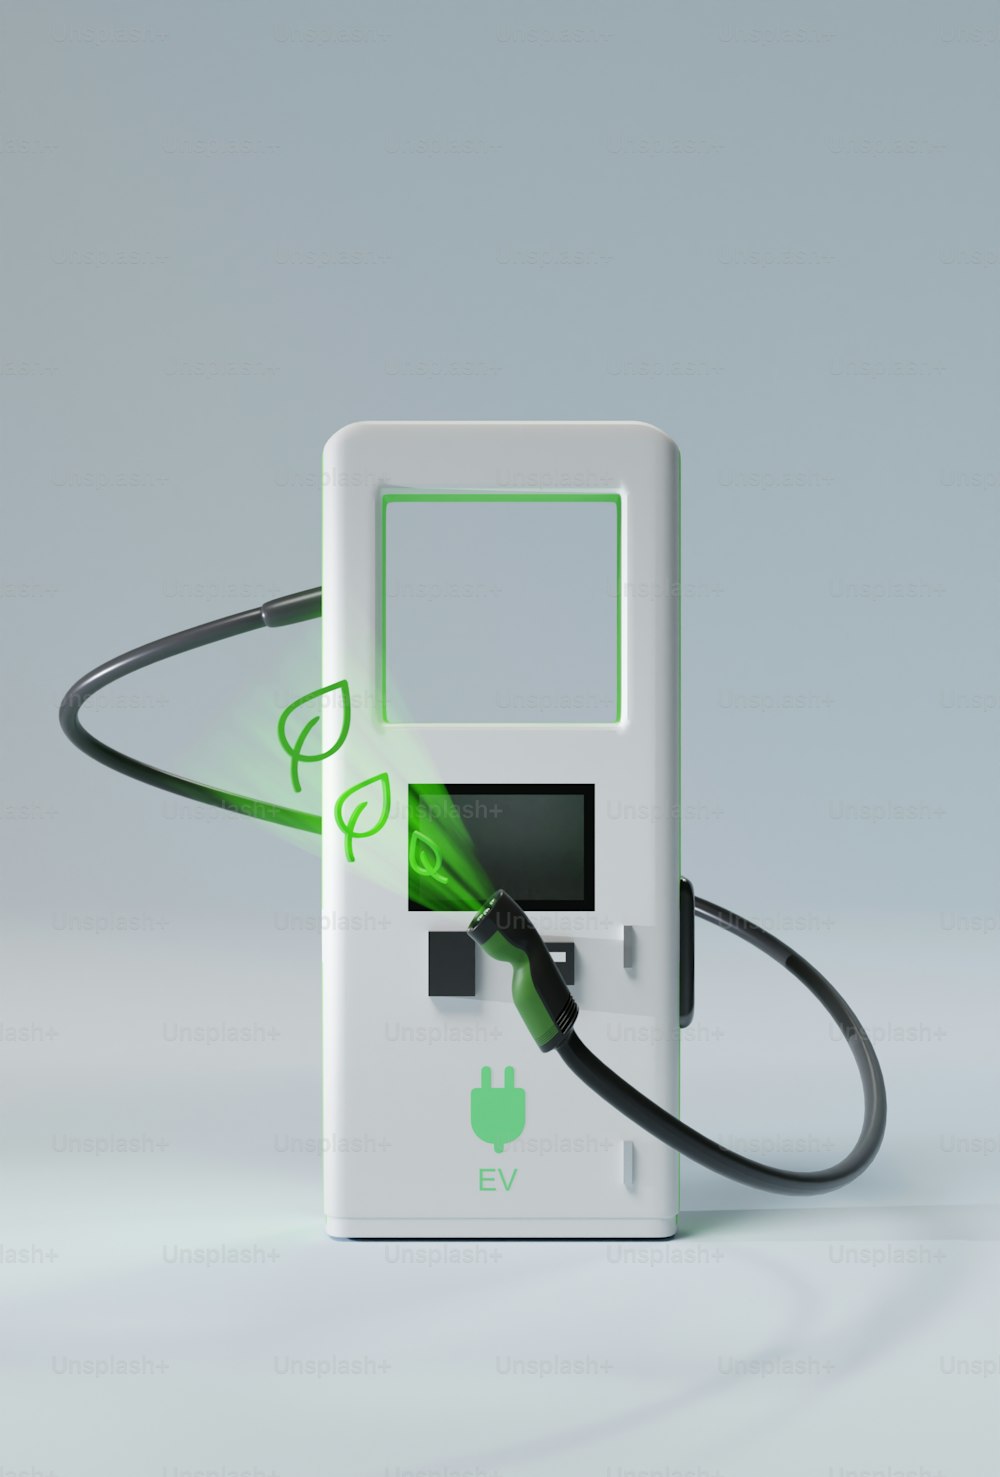 Un dispositivo electrónico con una luz verde que sale de él